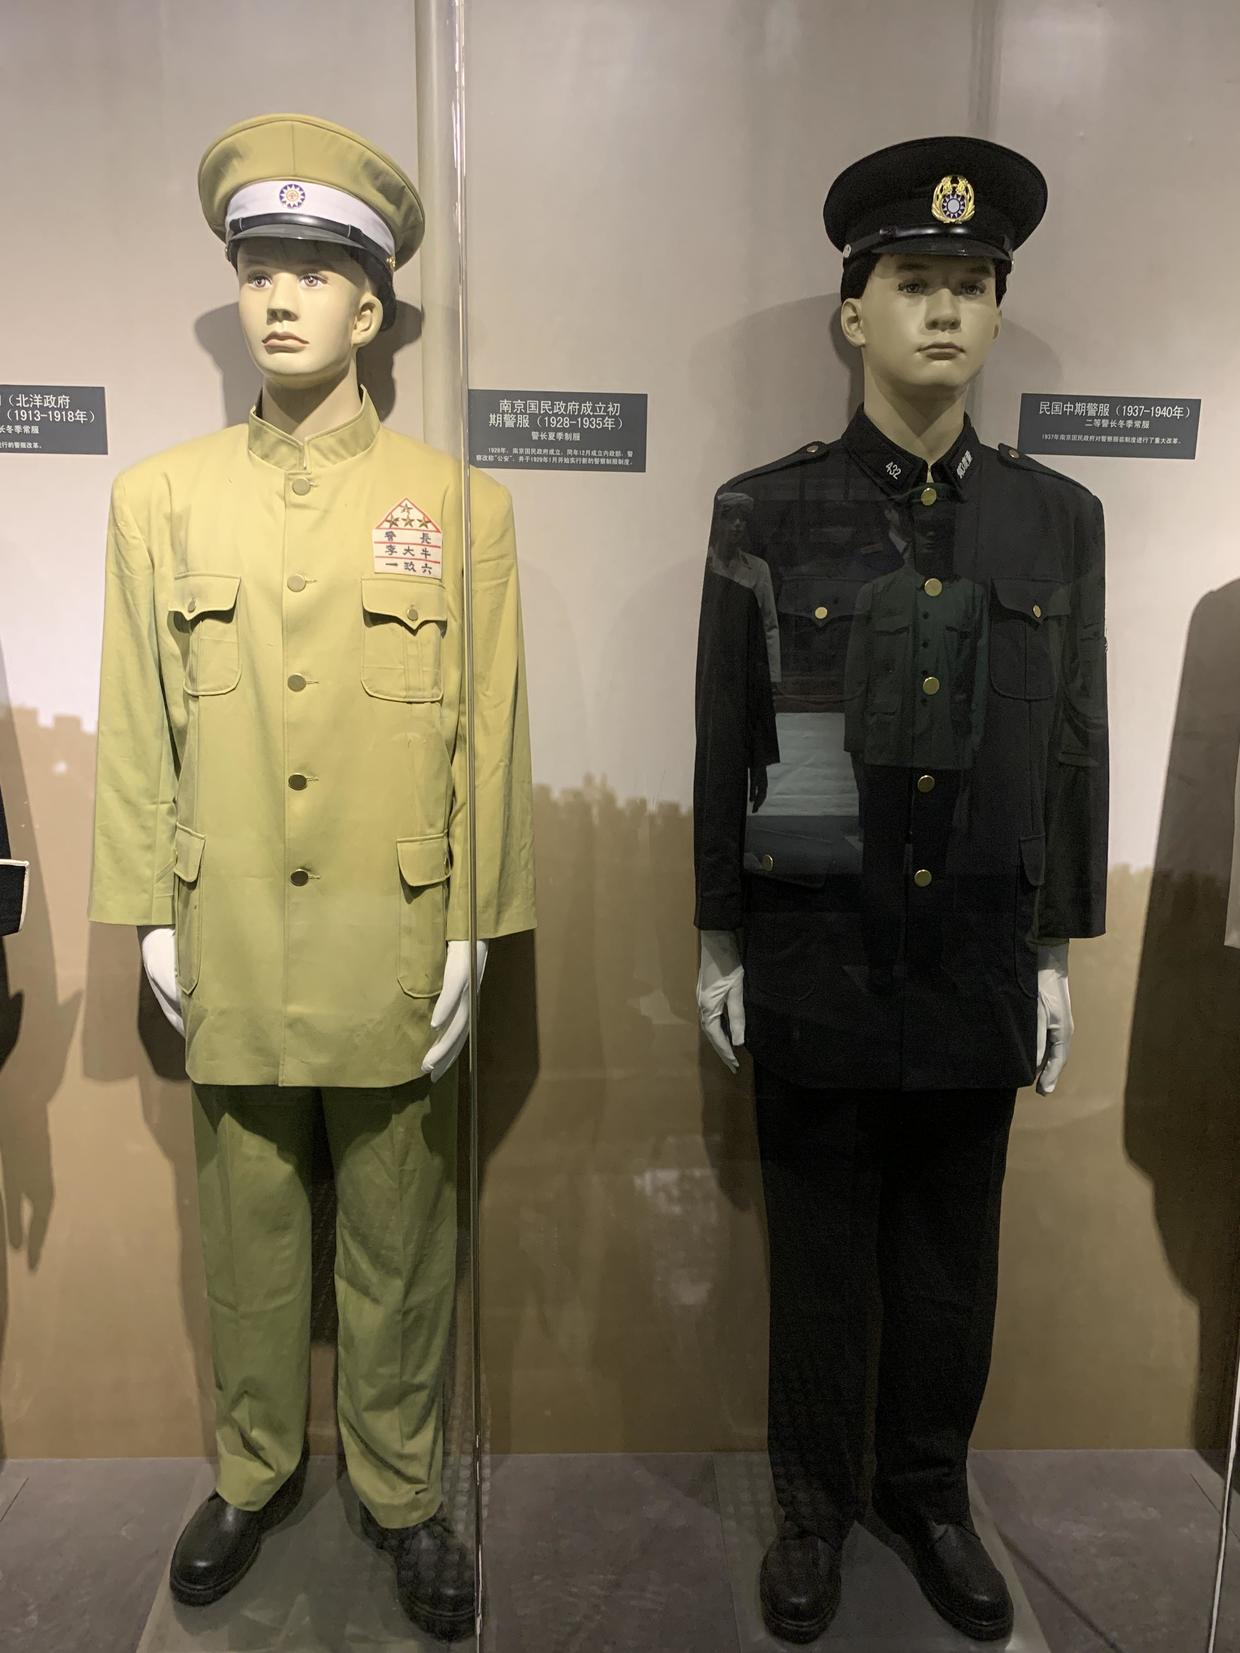 每日文物百年来中国警察的服装变革